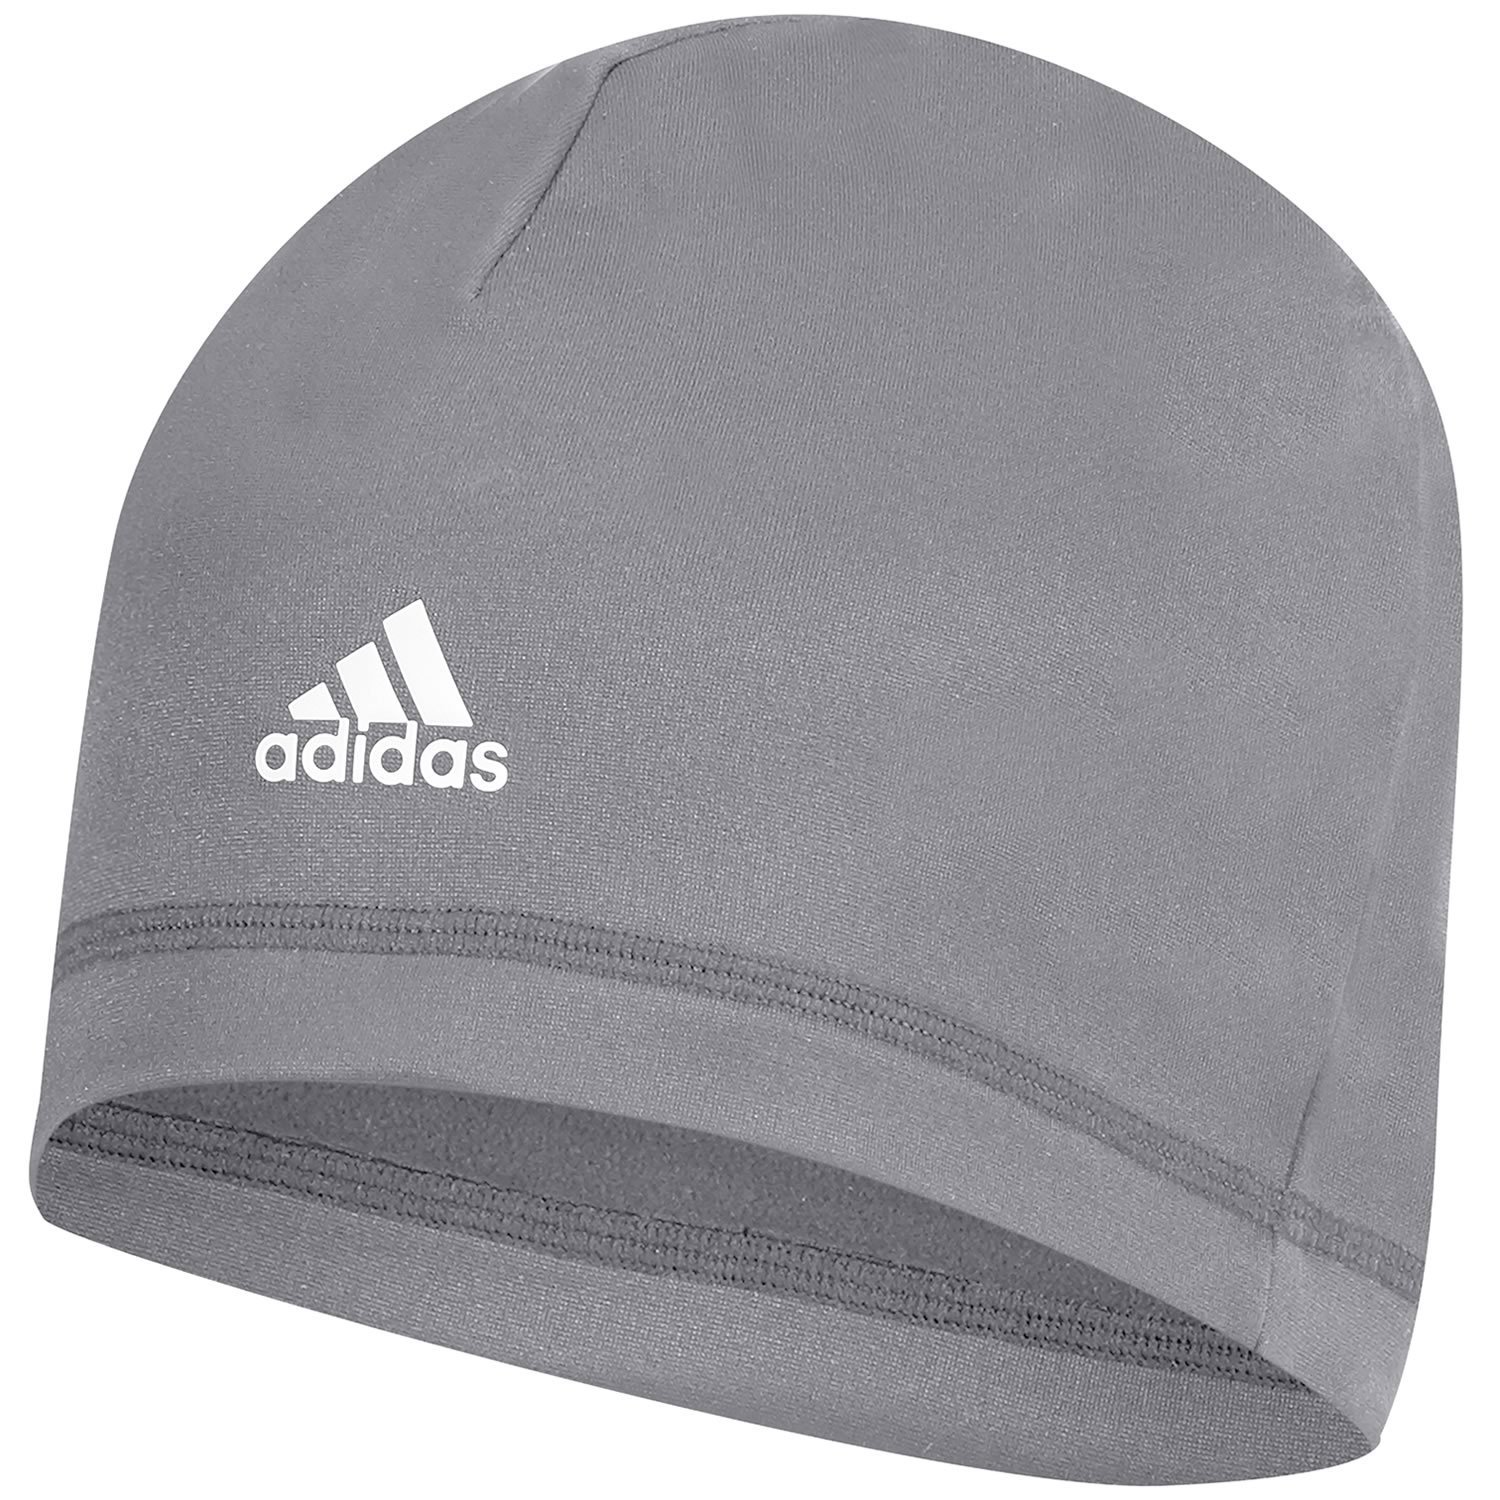 Mens Adidas Climawarm Lightweight Microfleece Crest Golf Beanie Hats